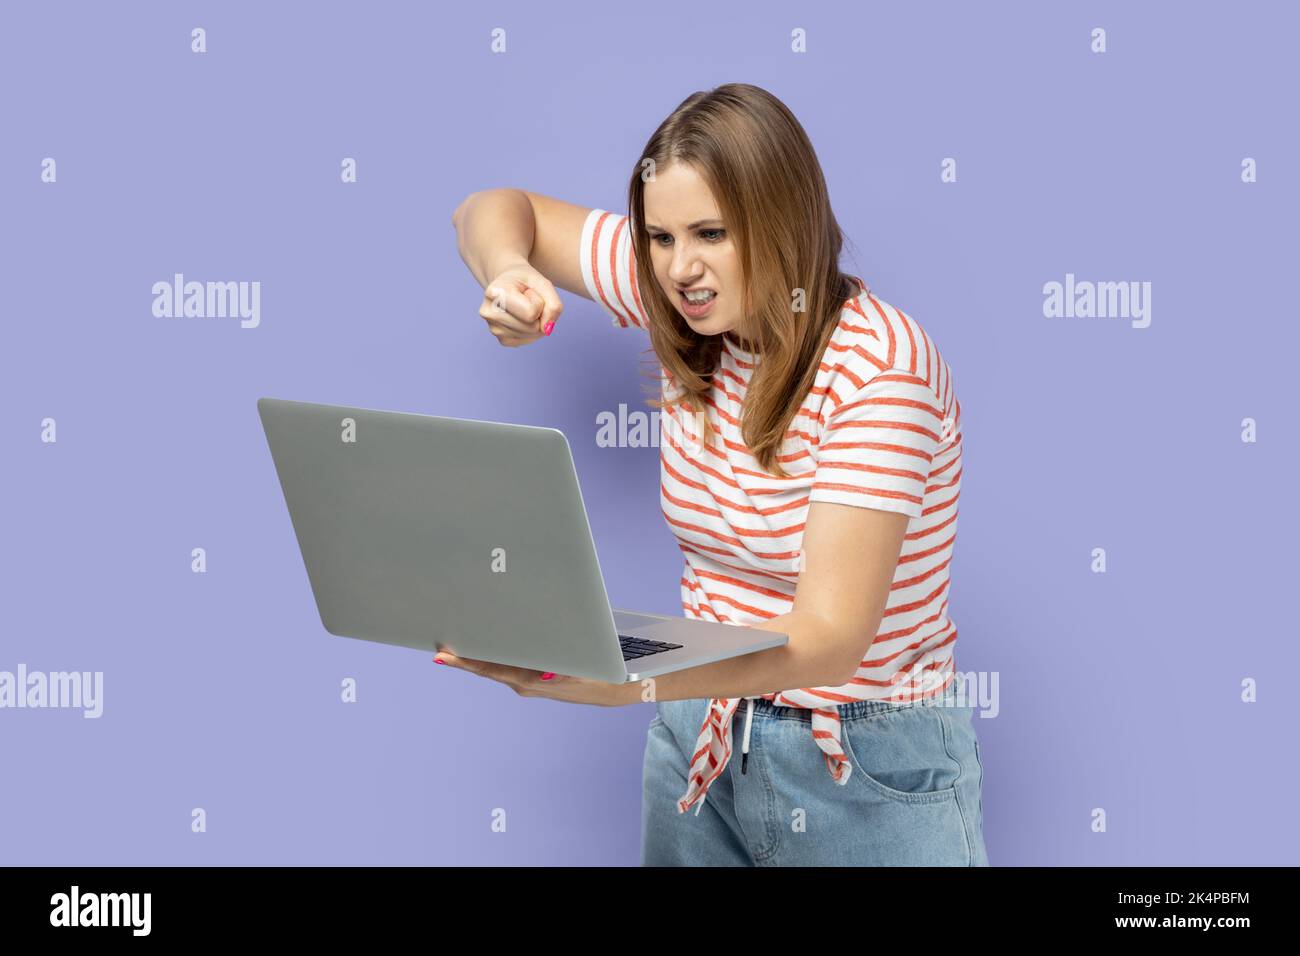 Porträt einer wütenden, aggressiven, blonden Frau mit gestreiftem T-Shirt, die am Laptop arbeitet, Online-Gespräche führt, auf dem Notebook-Display boxt. Innenaufnahme des Studios isoliert auf violettem Hintergrund. Stockfoto